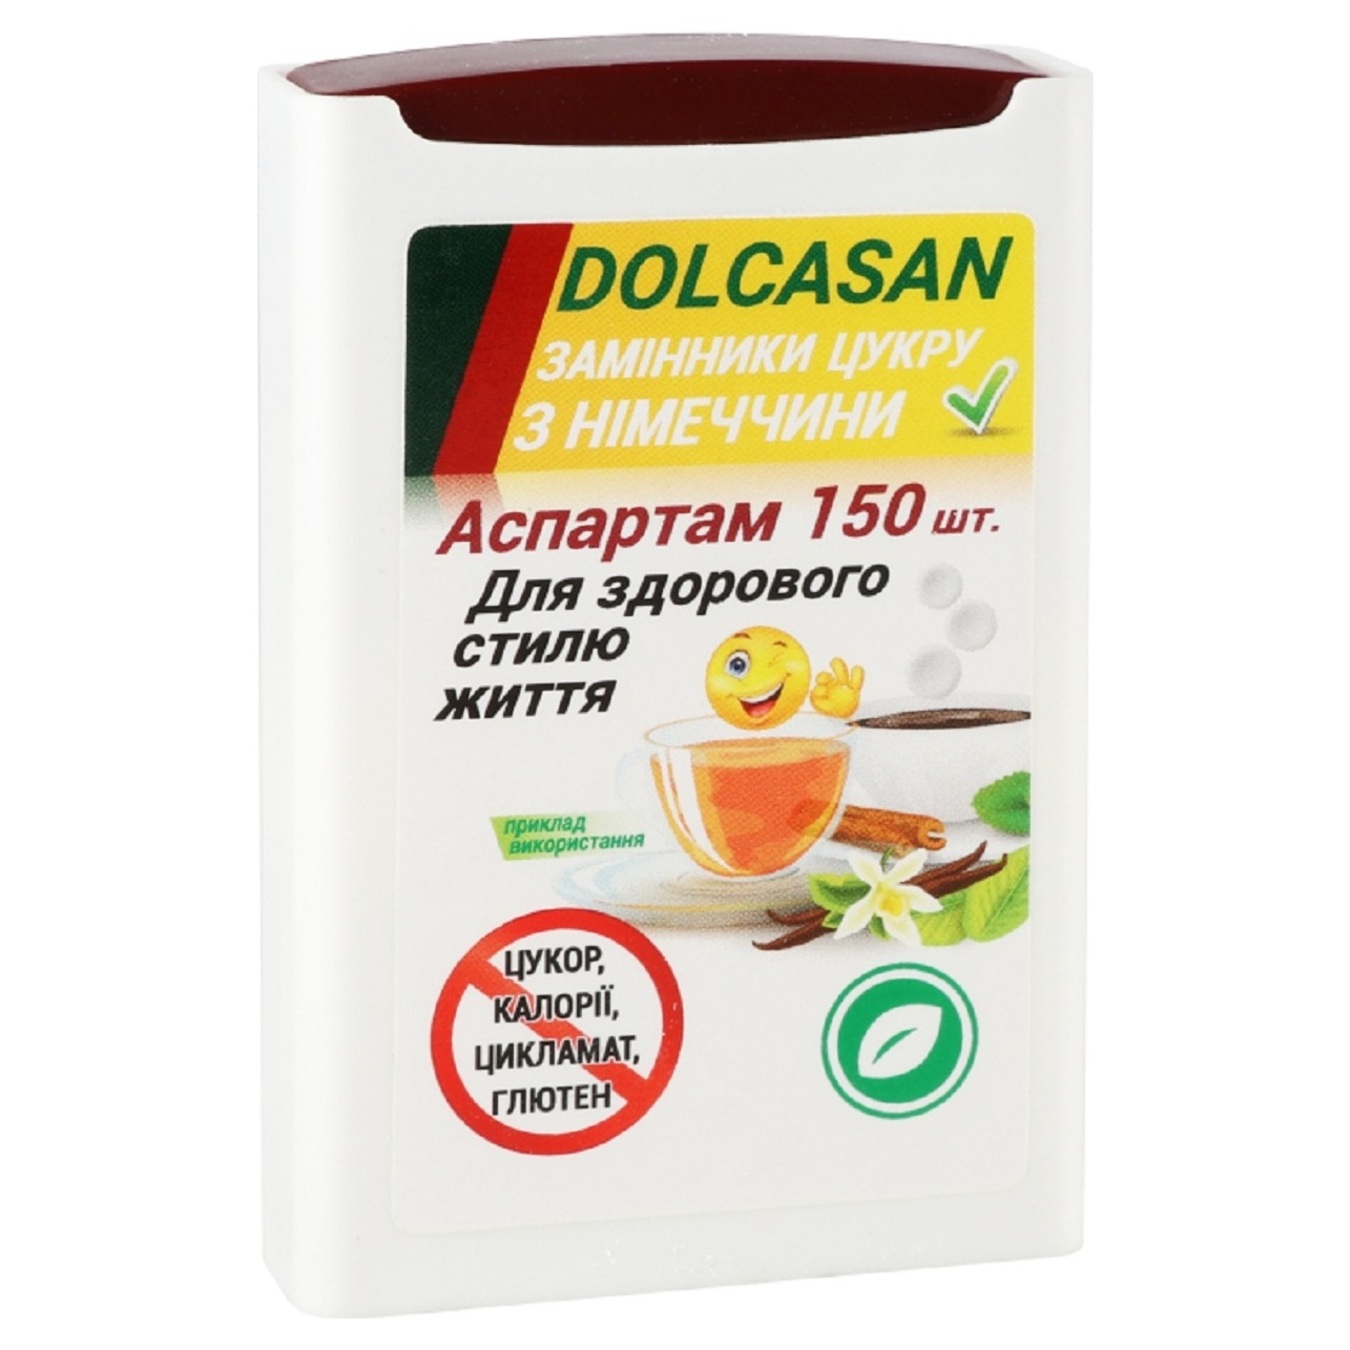 Sugar substitute Dolcasan aspartame 150pcs.